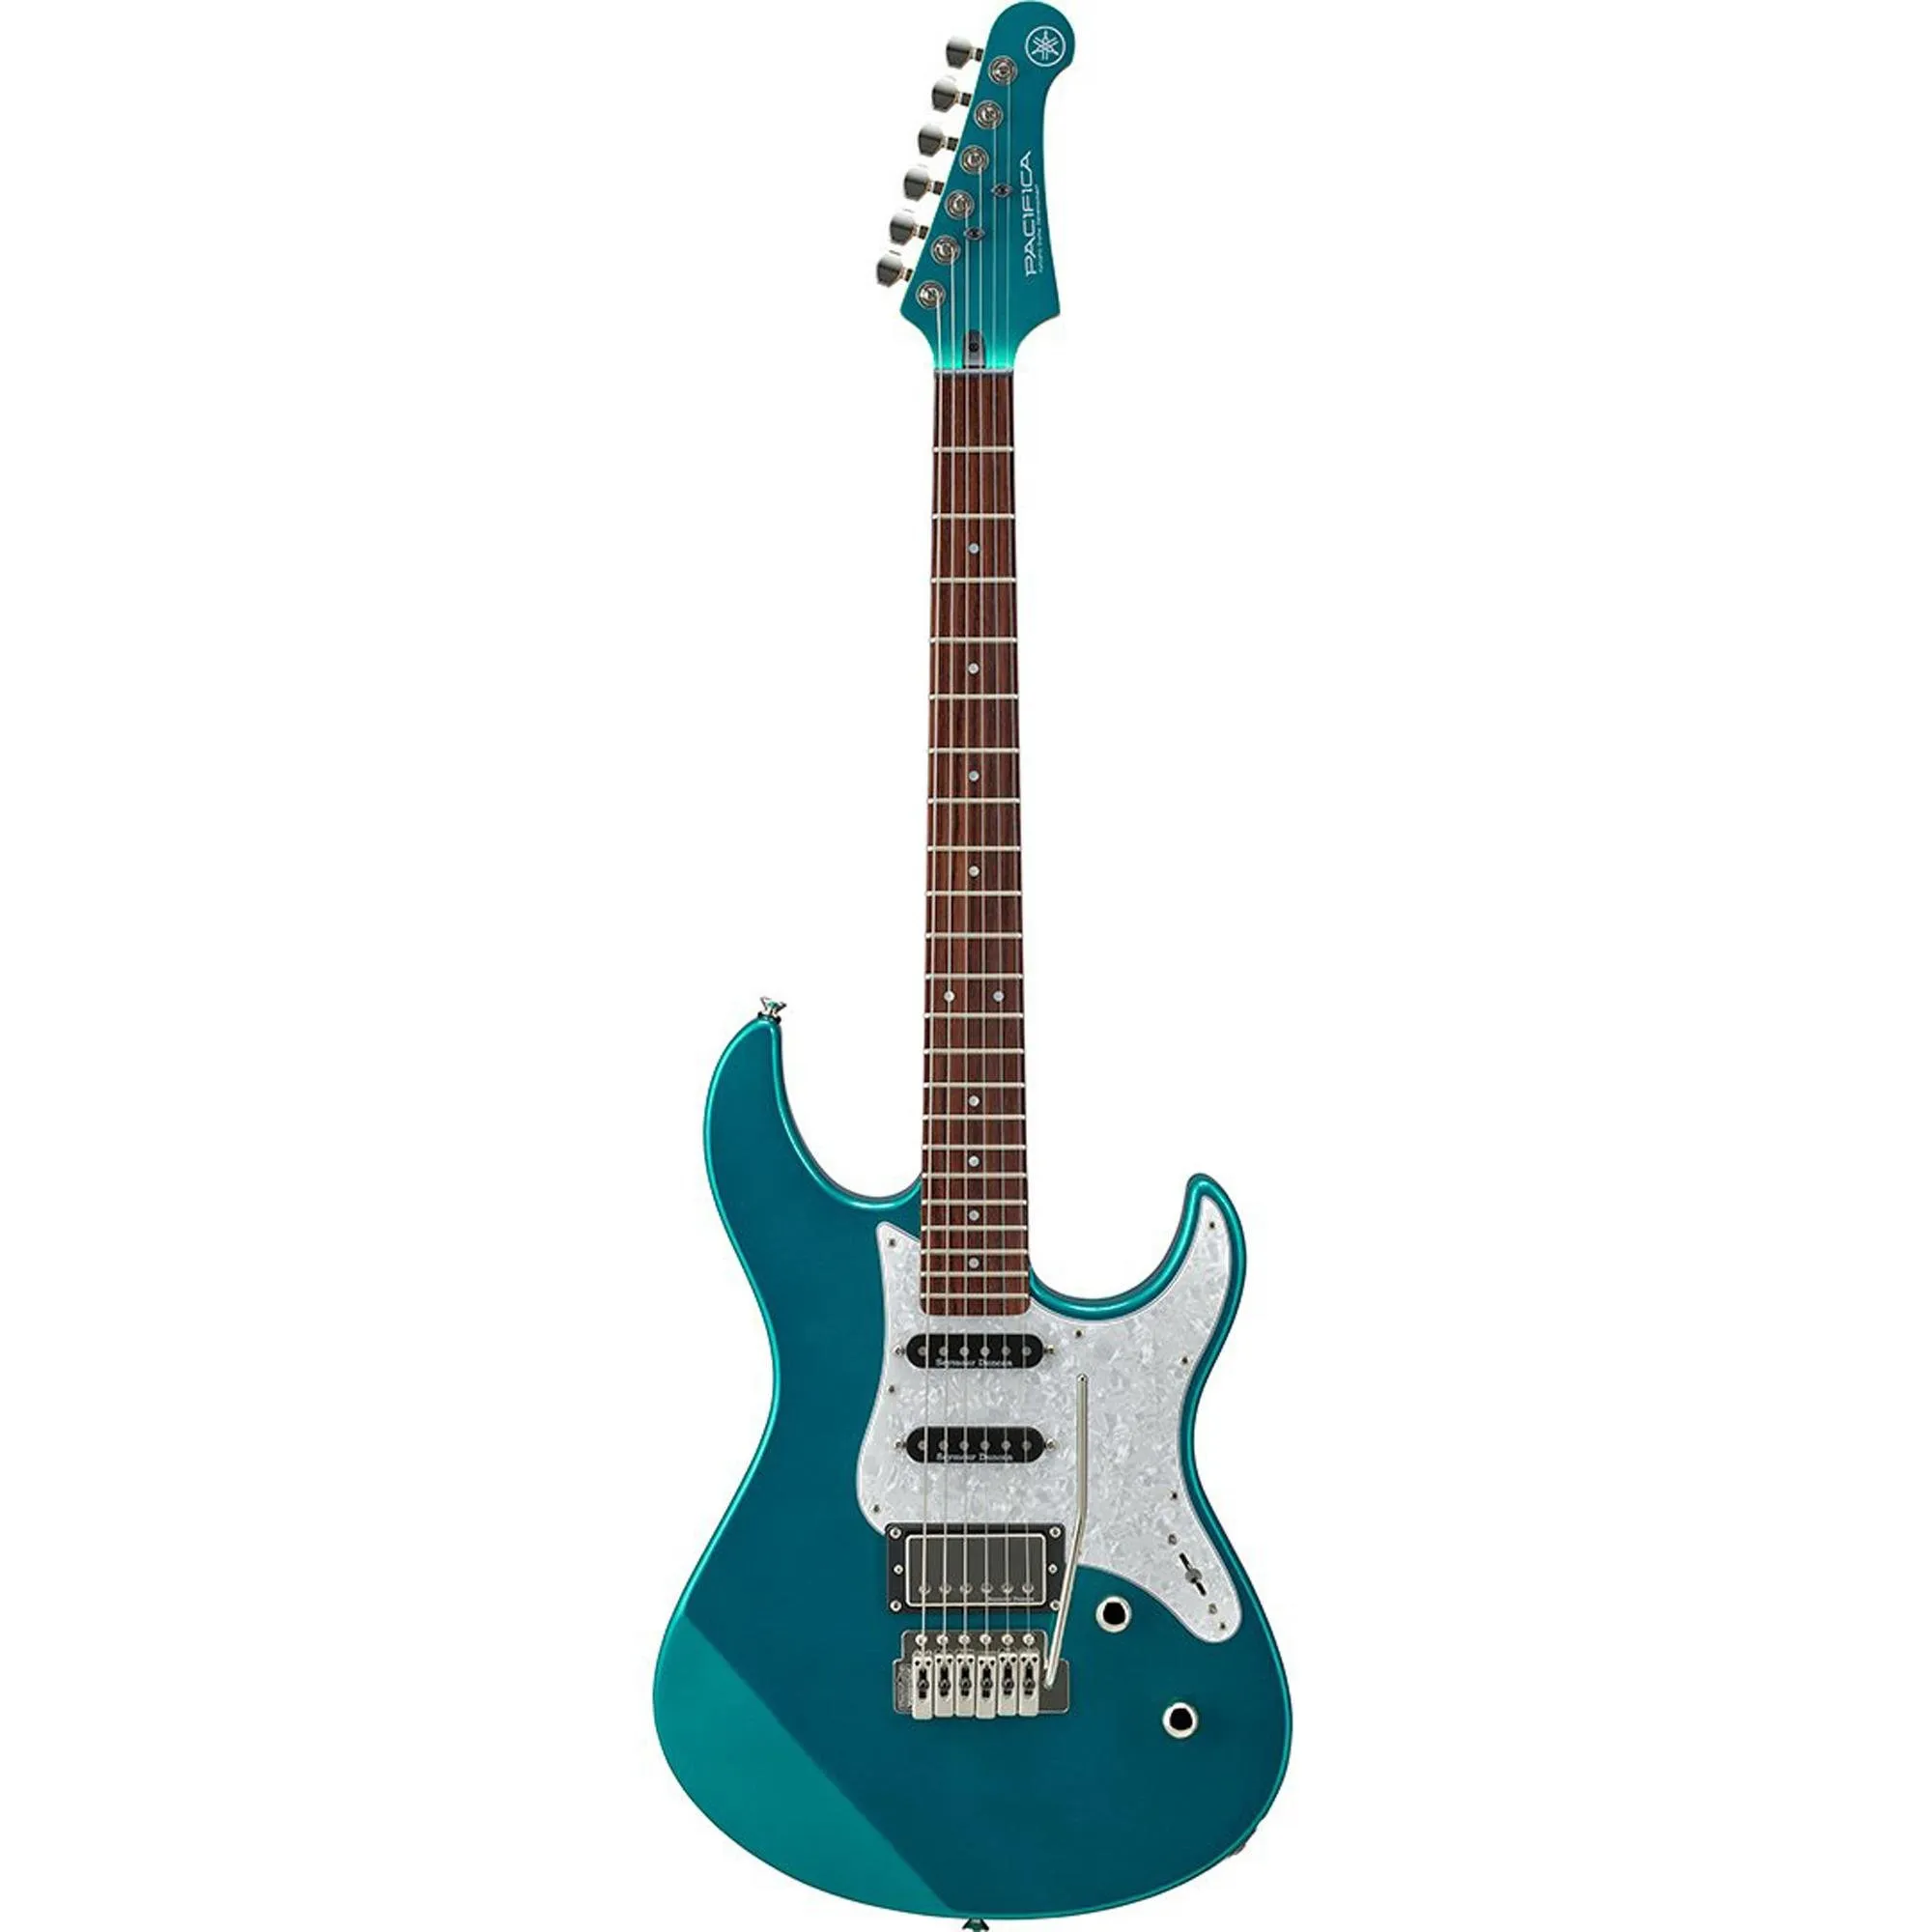 Guitarra Yamaha Pacífica PAC 612 VIIX Teal Green Metallic por 5.804,99 à vista no boleto/pix ou parcele em até 12x sem juros. Compre na loja Mundomax!